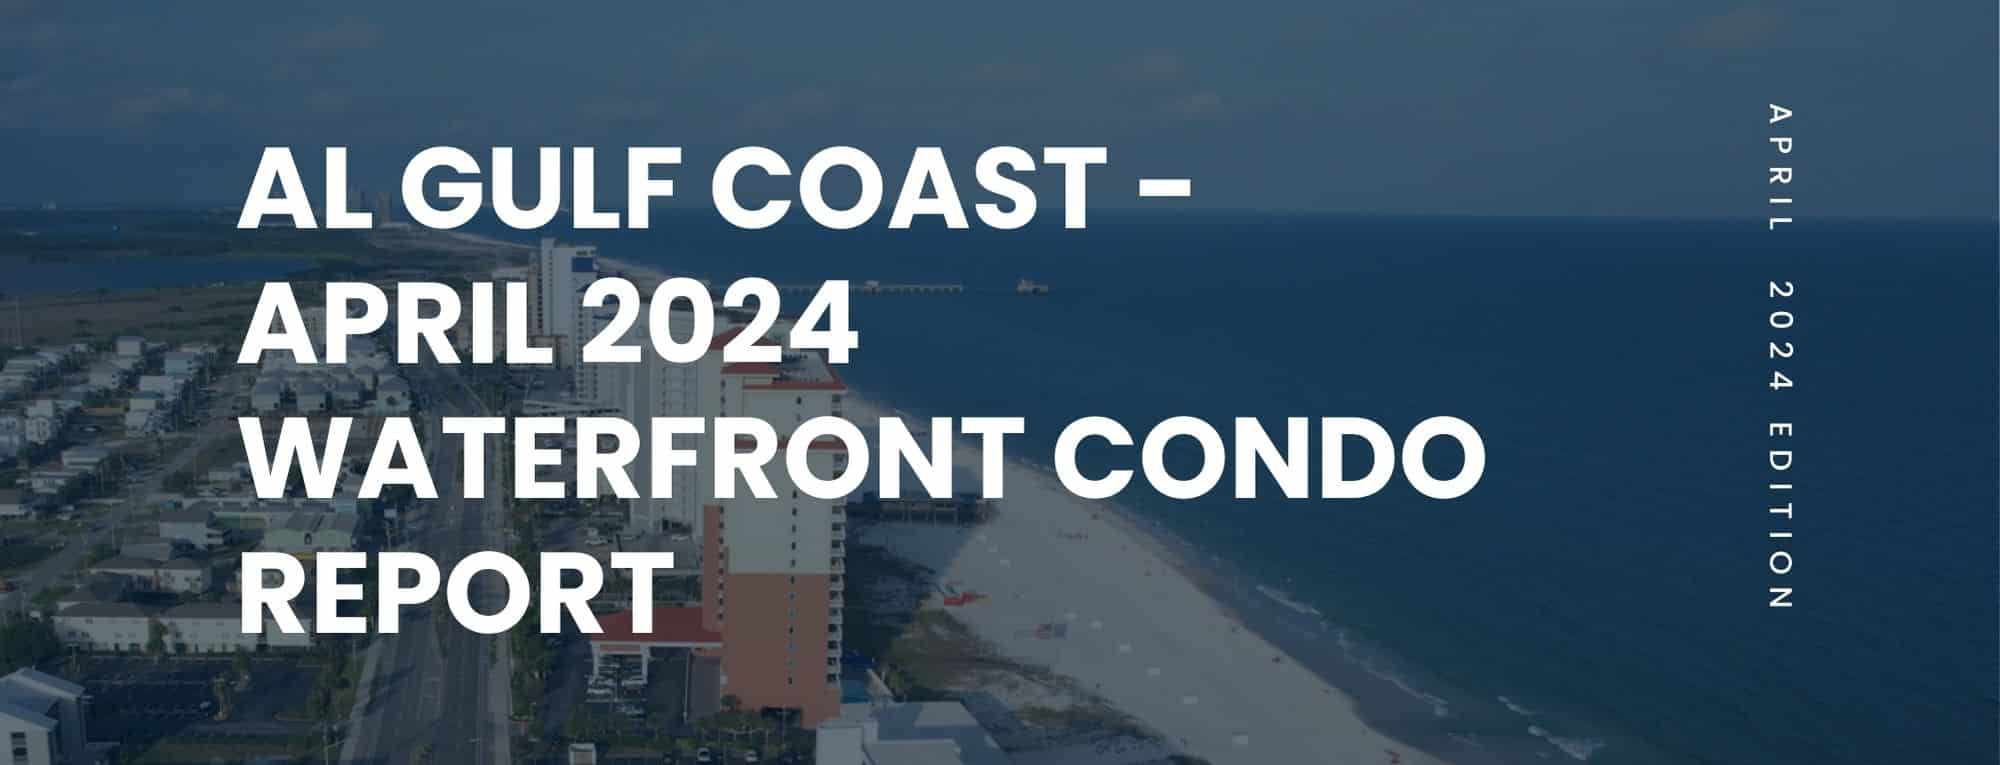 AL Gulf Coast Waterfront Condo Market Report April 2024